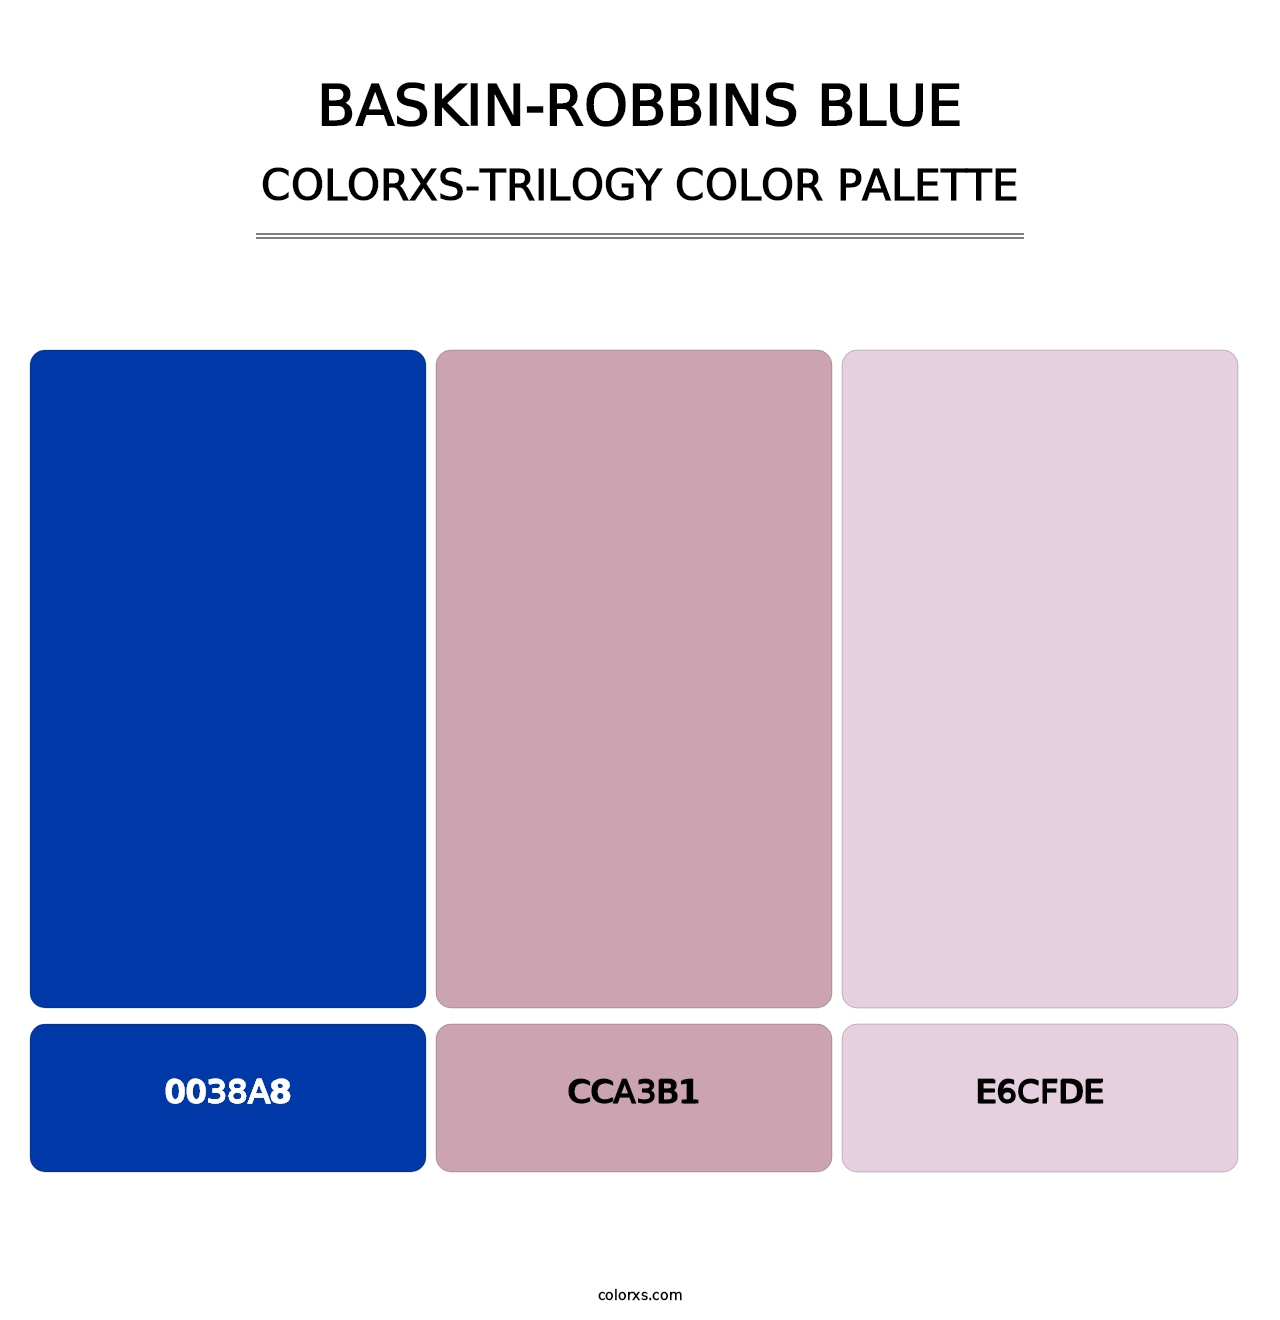 Baskin-Robbins Blue - Colorxs Trilogy Palette